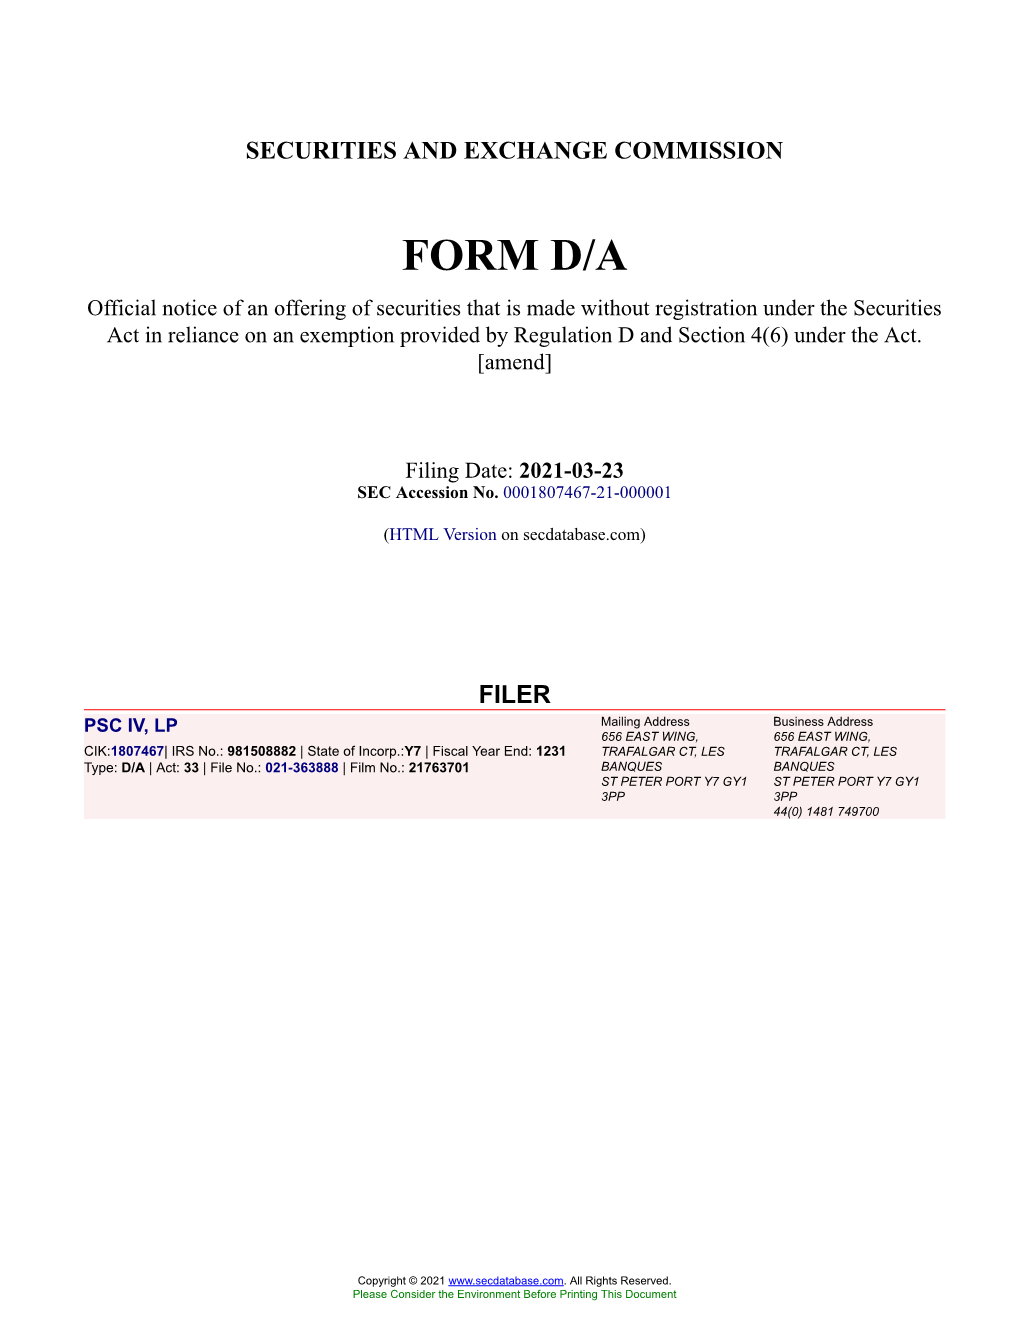 PSC IV, LP Form D/A Filed 2021-03-23